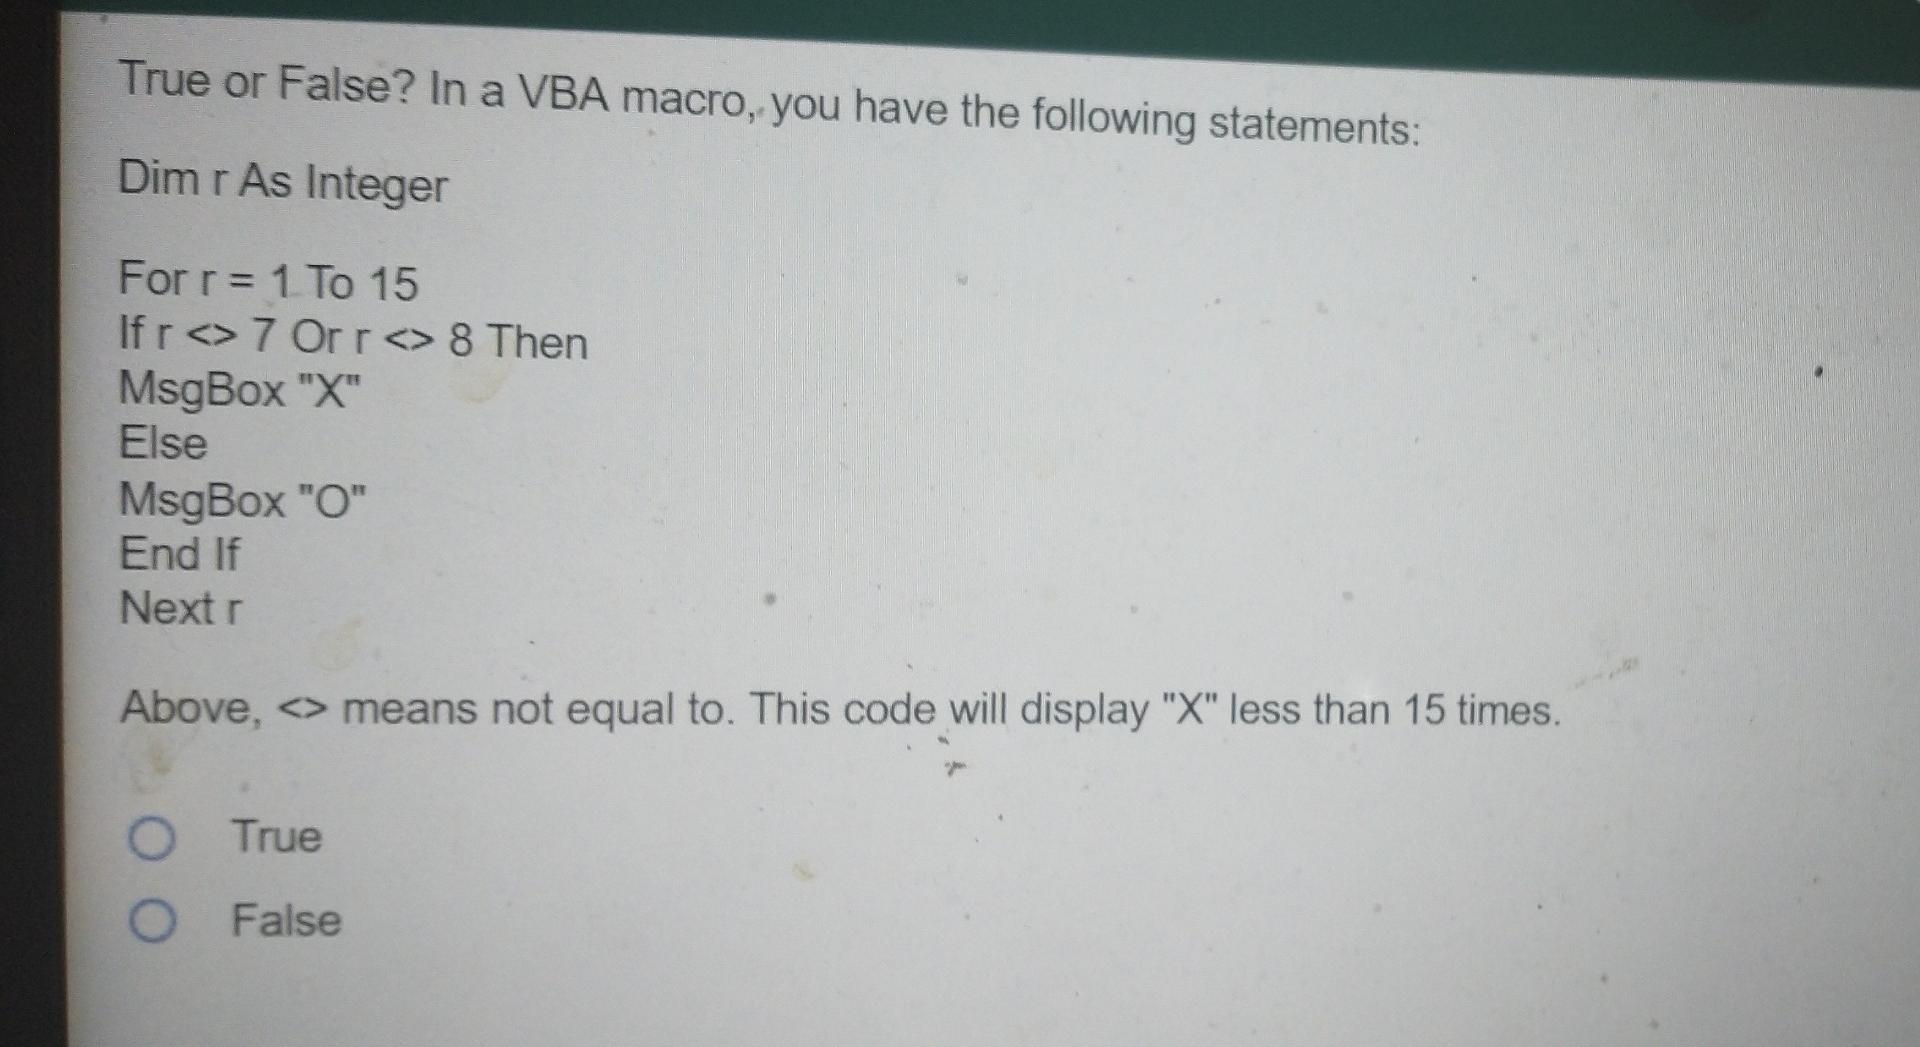 What Does Dim Mean When Coding VBA Macros?